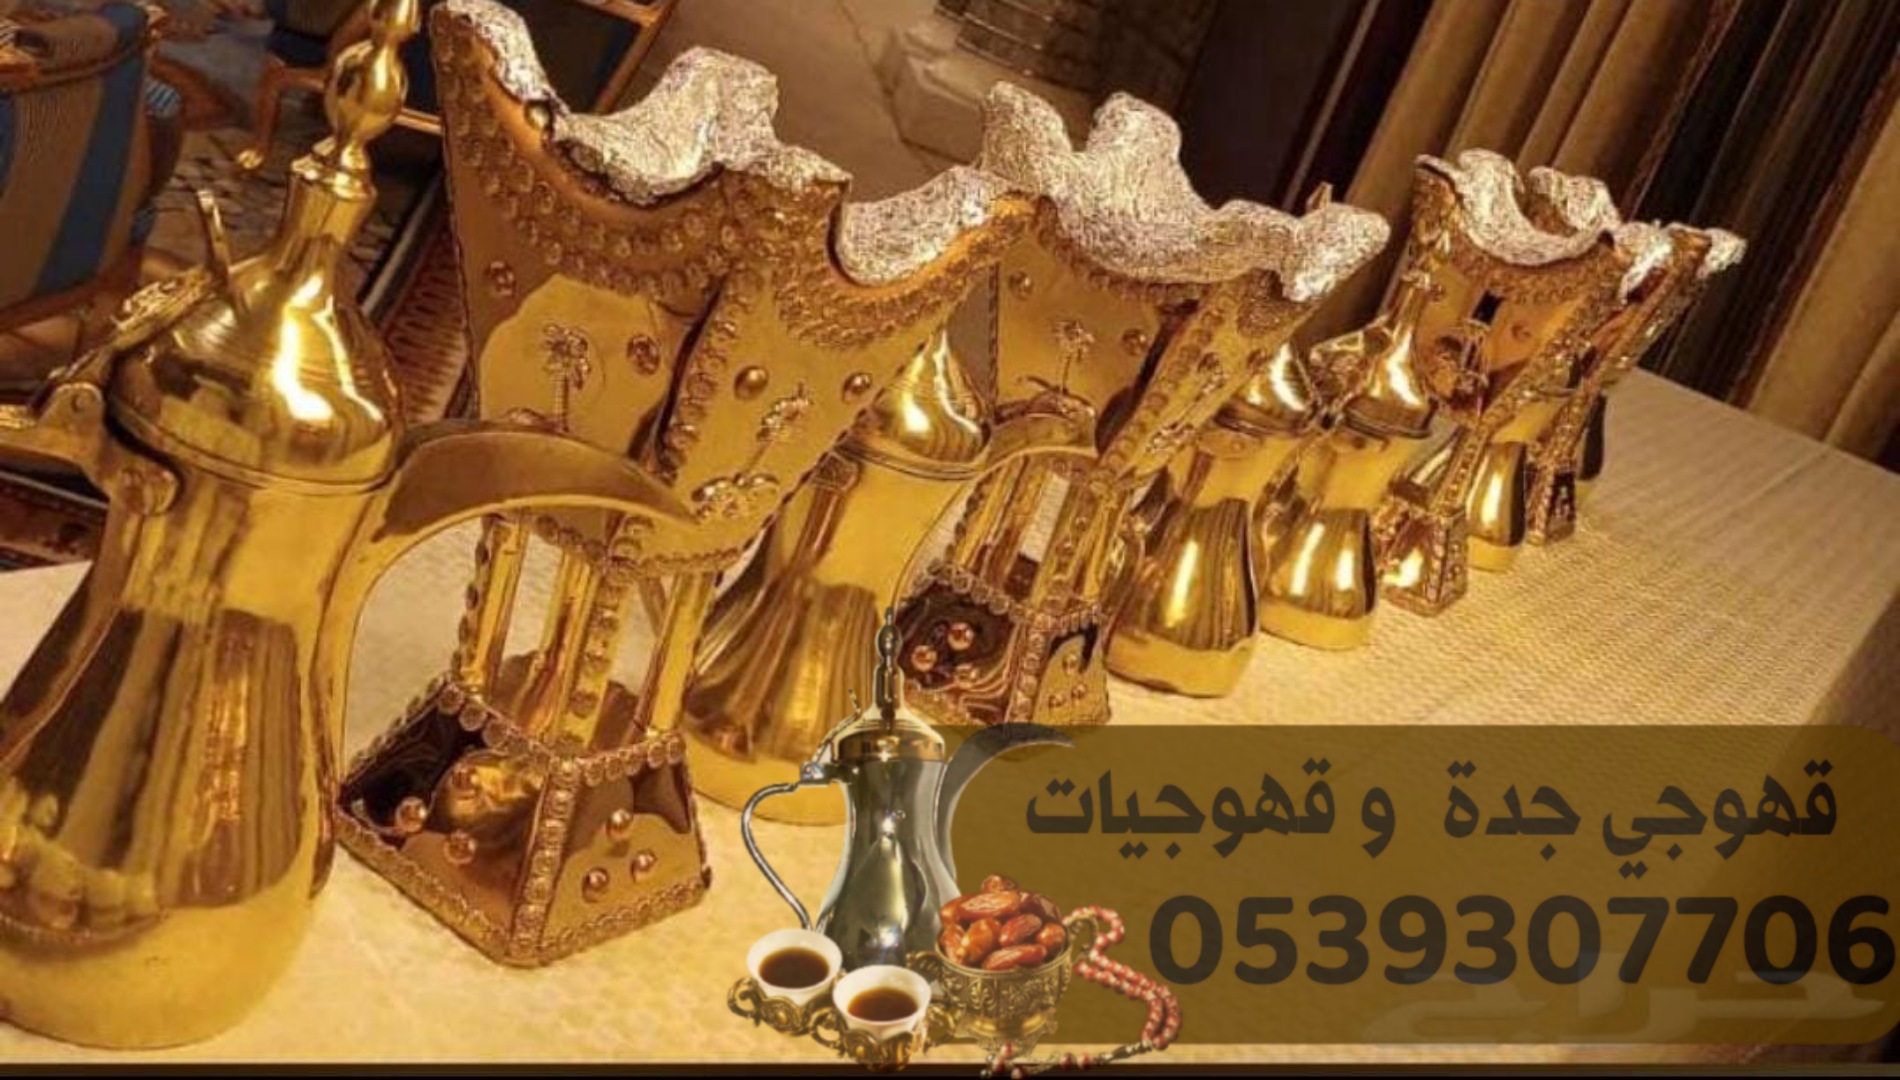 صبابين قهوة في جدة ومنسقين حفلات 0539307706